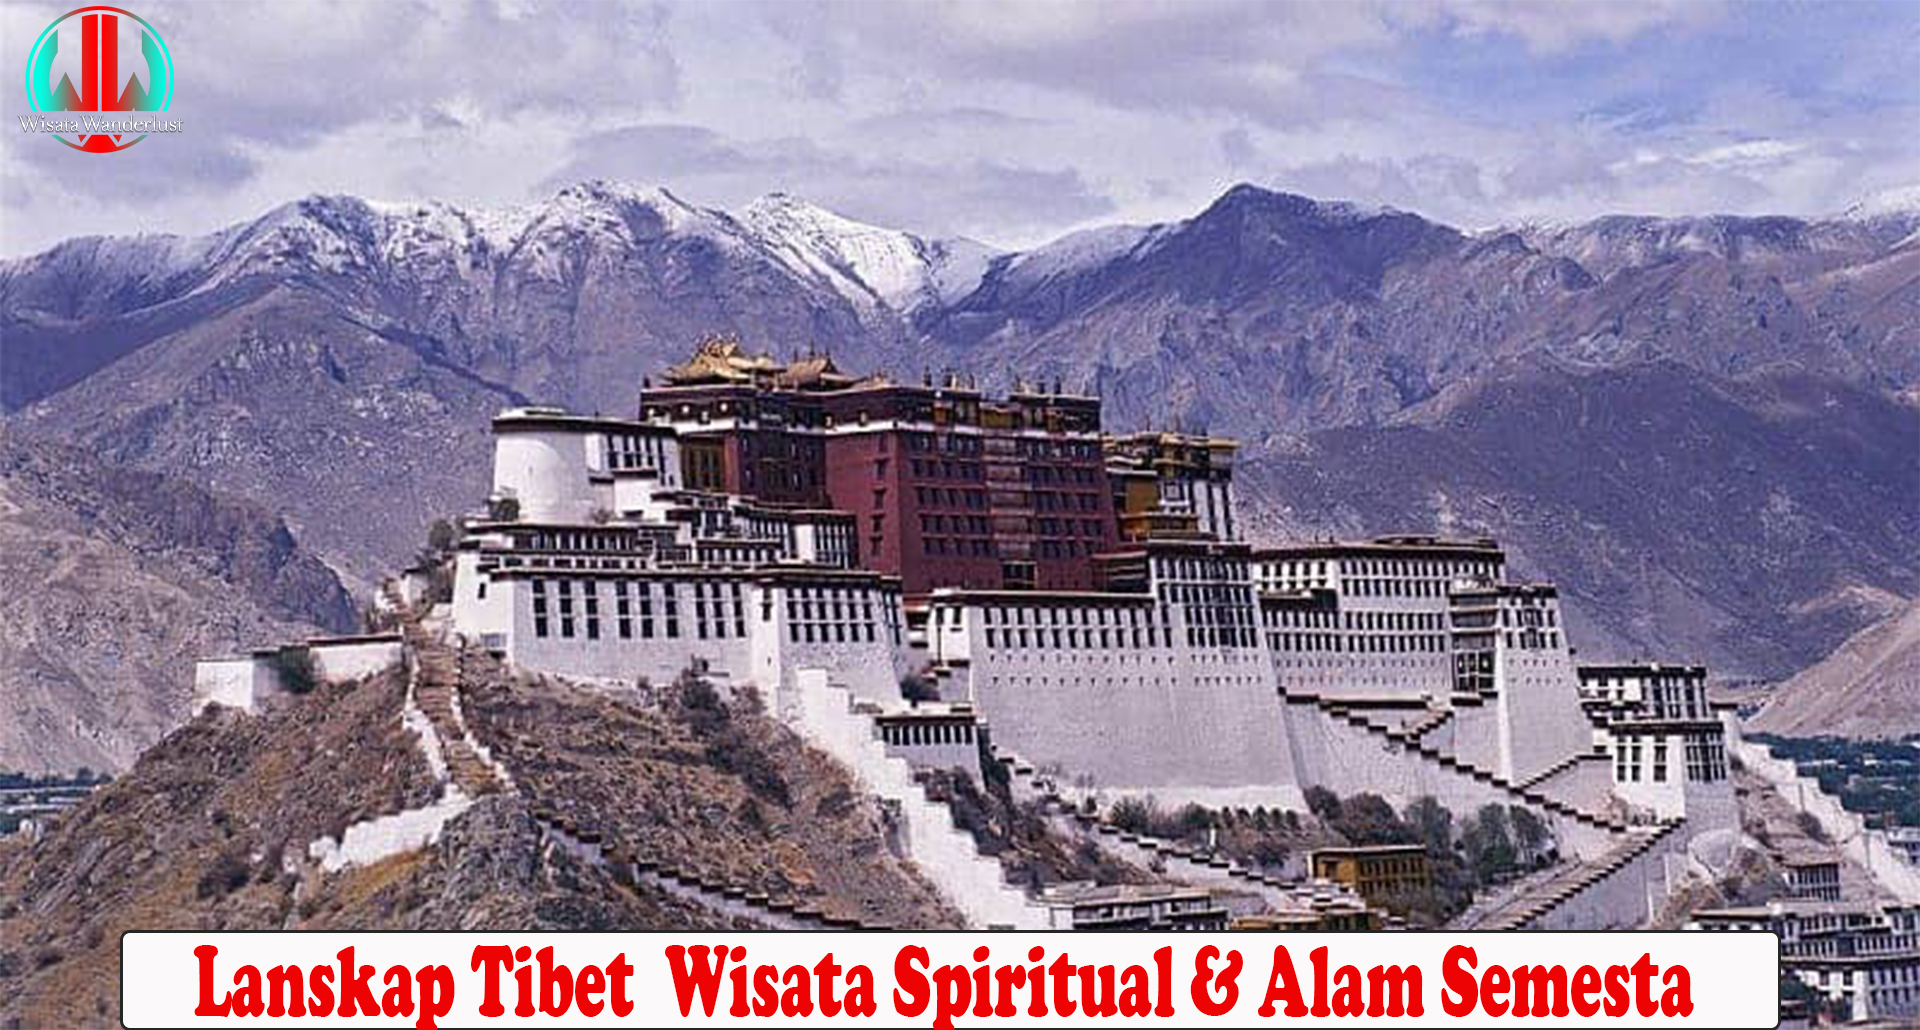 Lanskap Tibet Wisata Spiritual & Alam Semesta